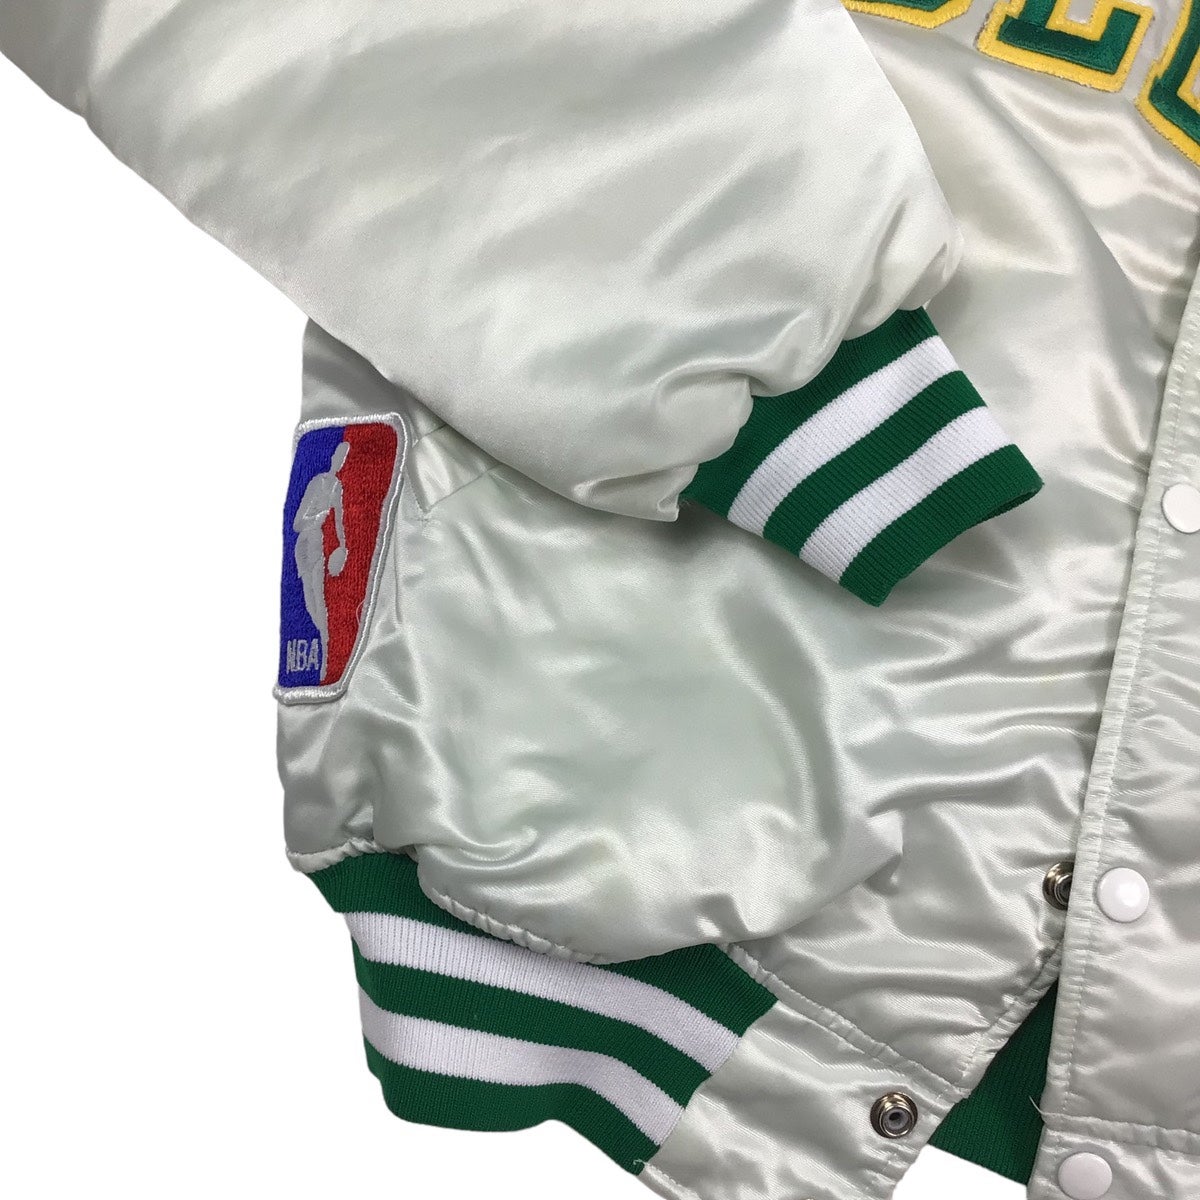 Vintage Boston Celtics NBA Satin Starter Sz XL Bomber Jacket Snap